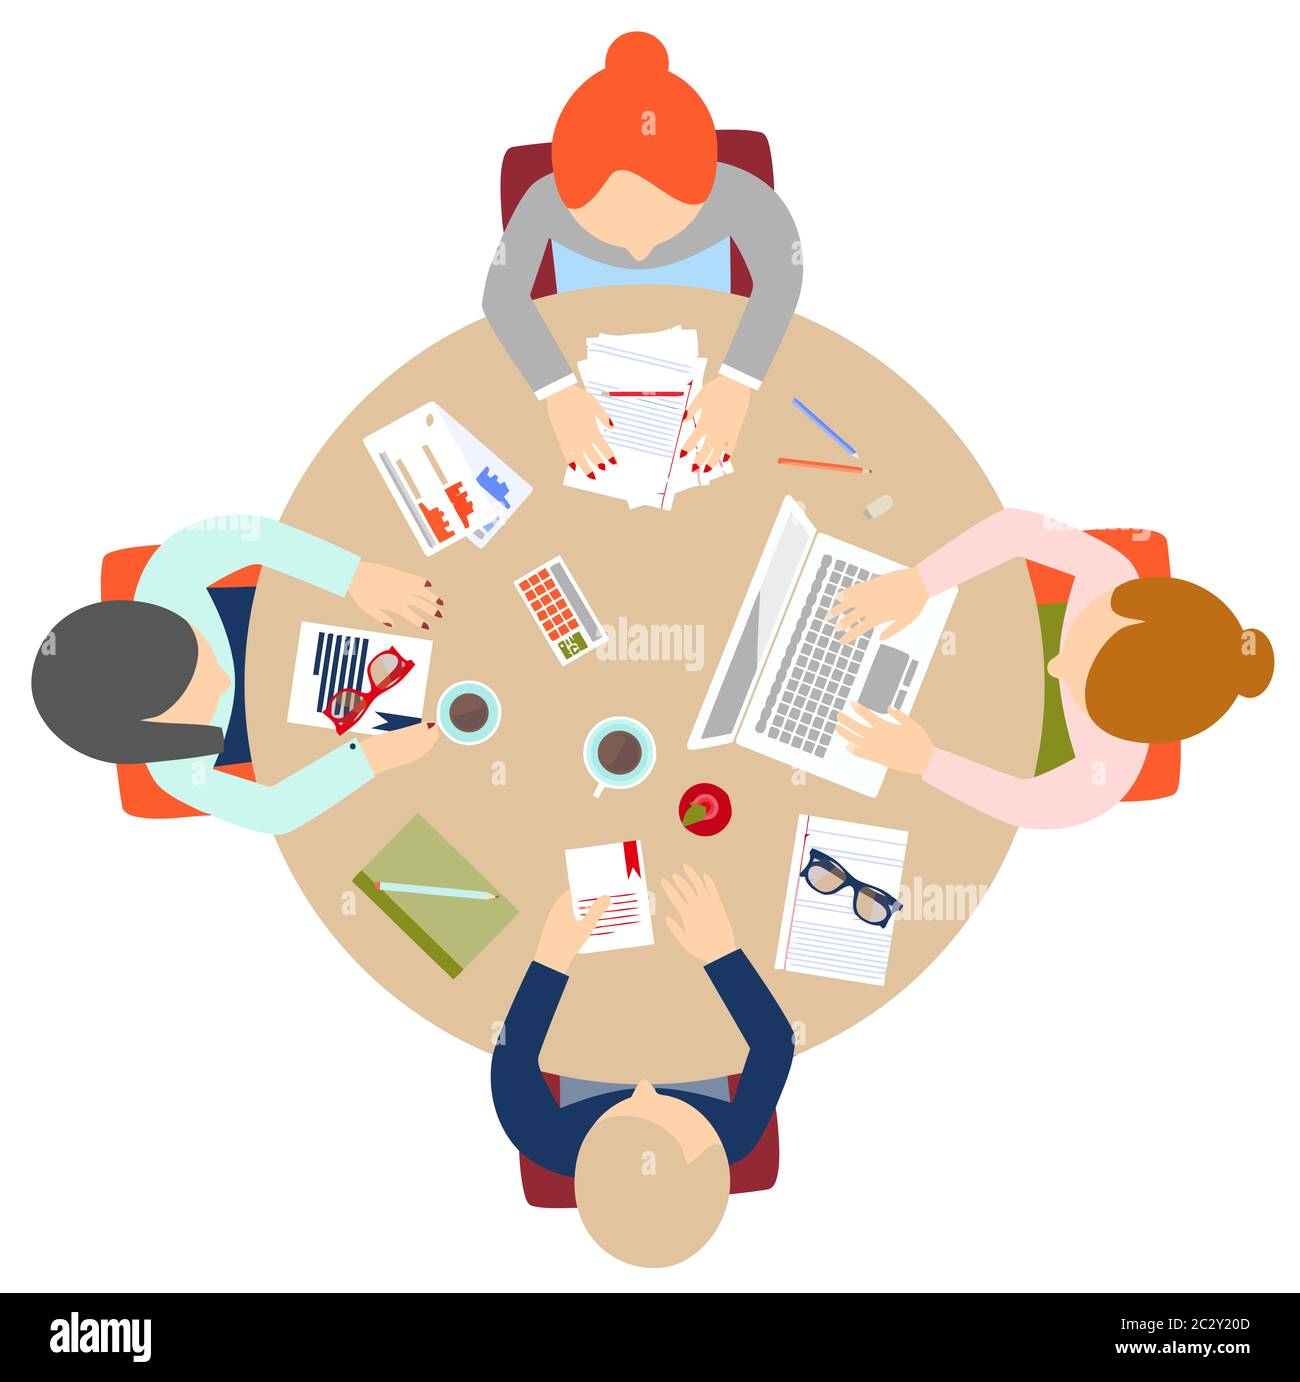 estrategia de reuniones mesa redonda de trabajo en equipo sobre el administrador de oficinas ilustración del ordenador Fotografía de stock - Alamy